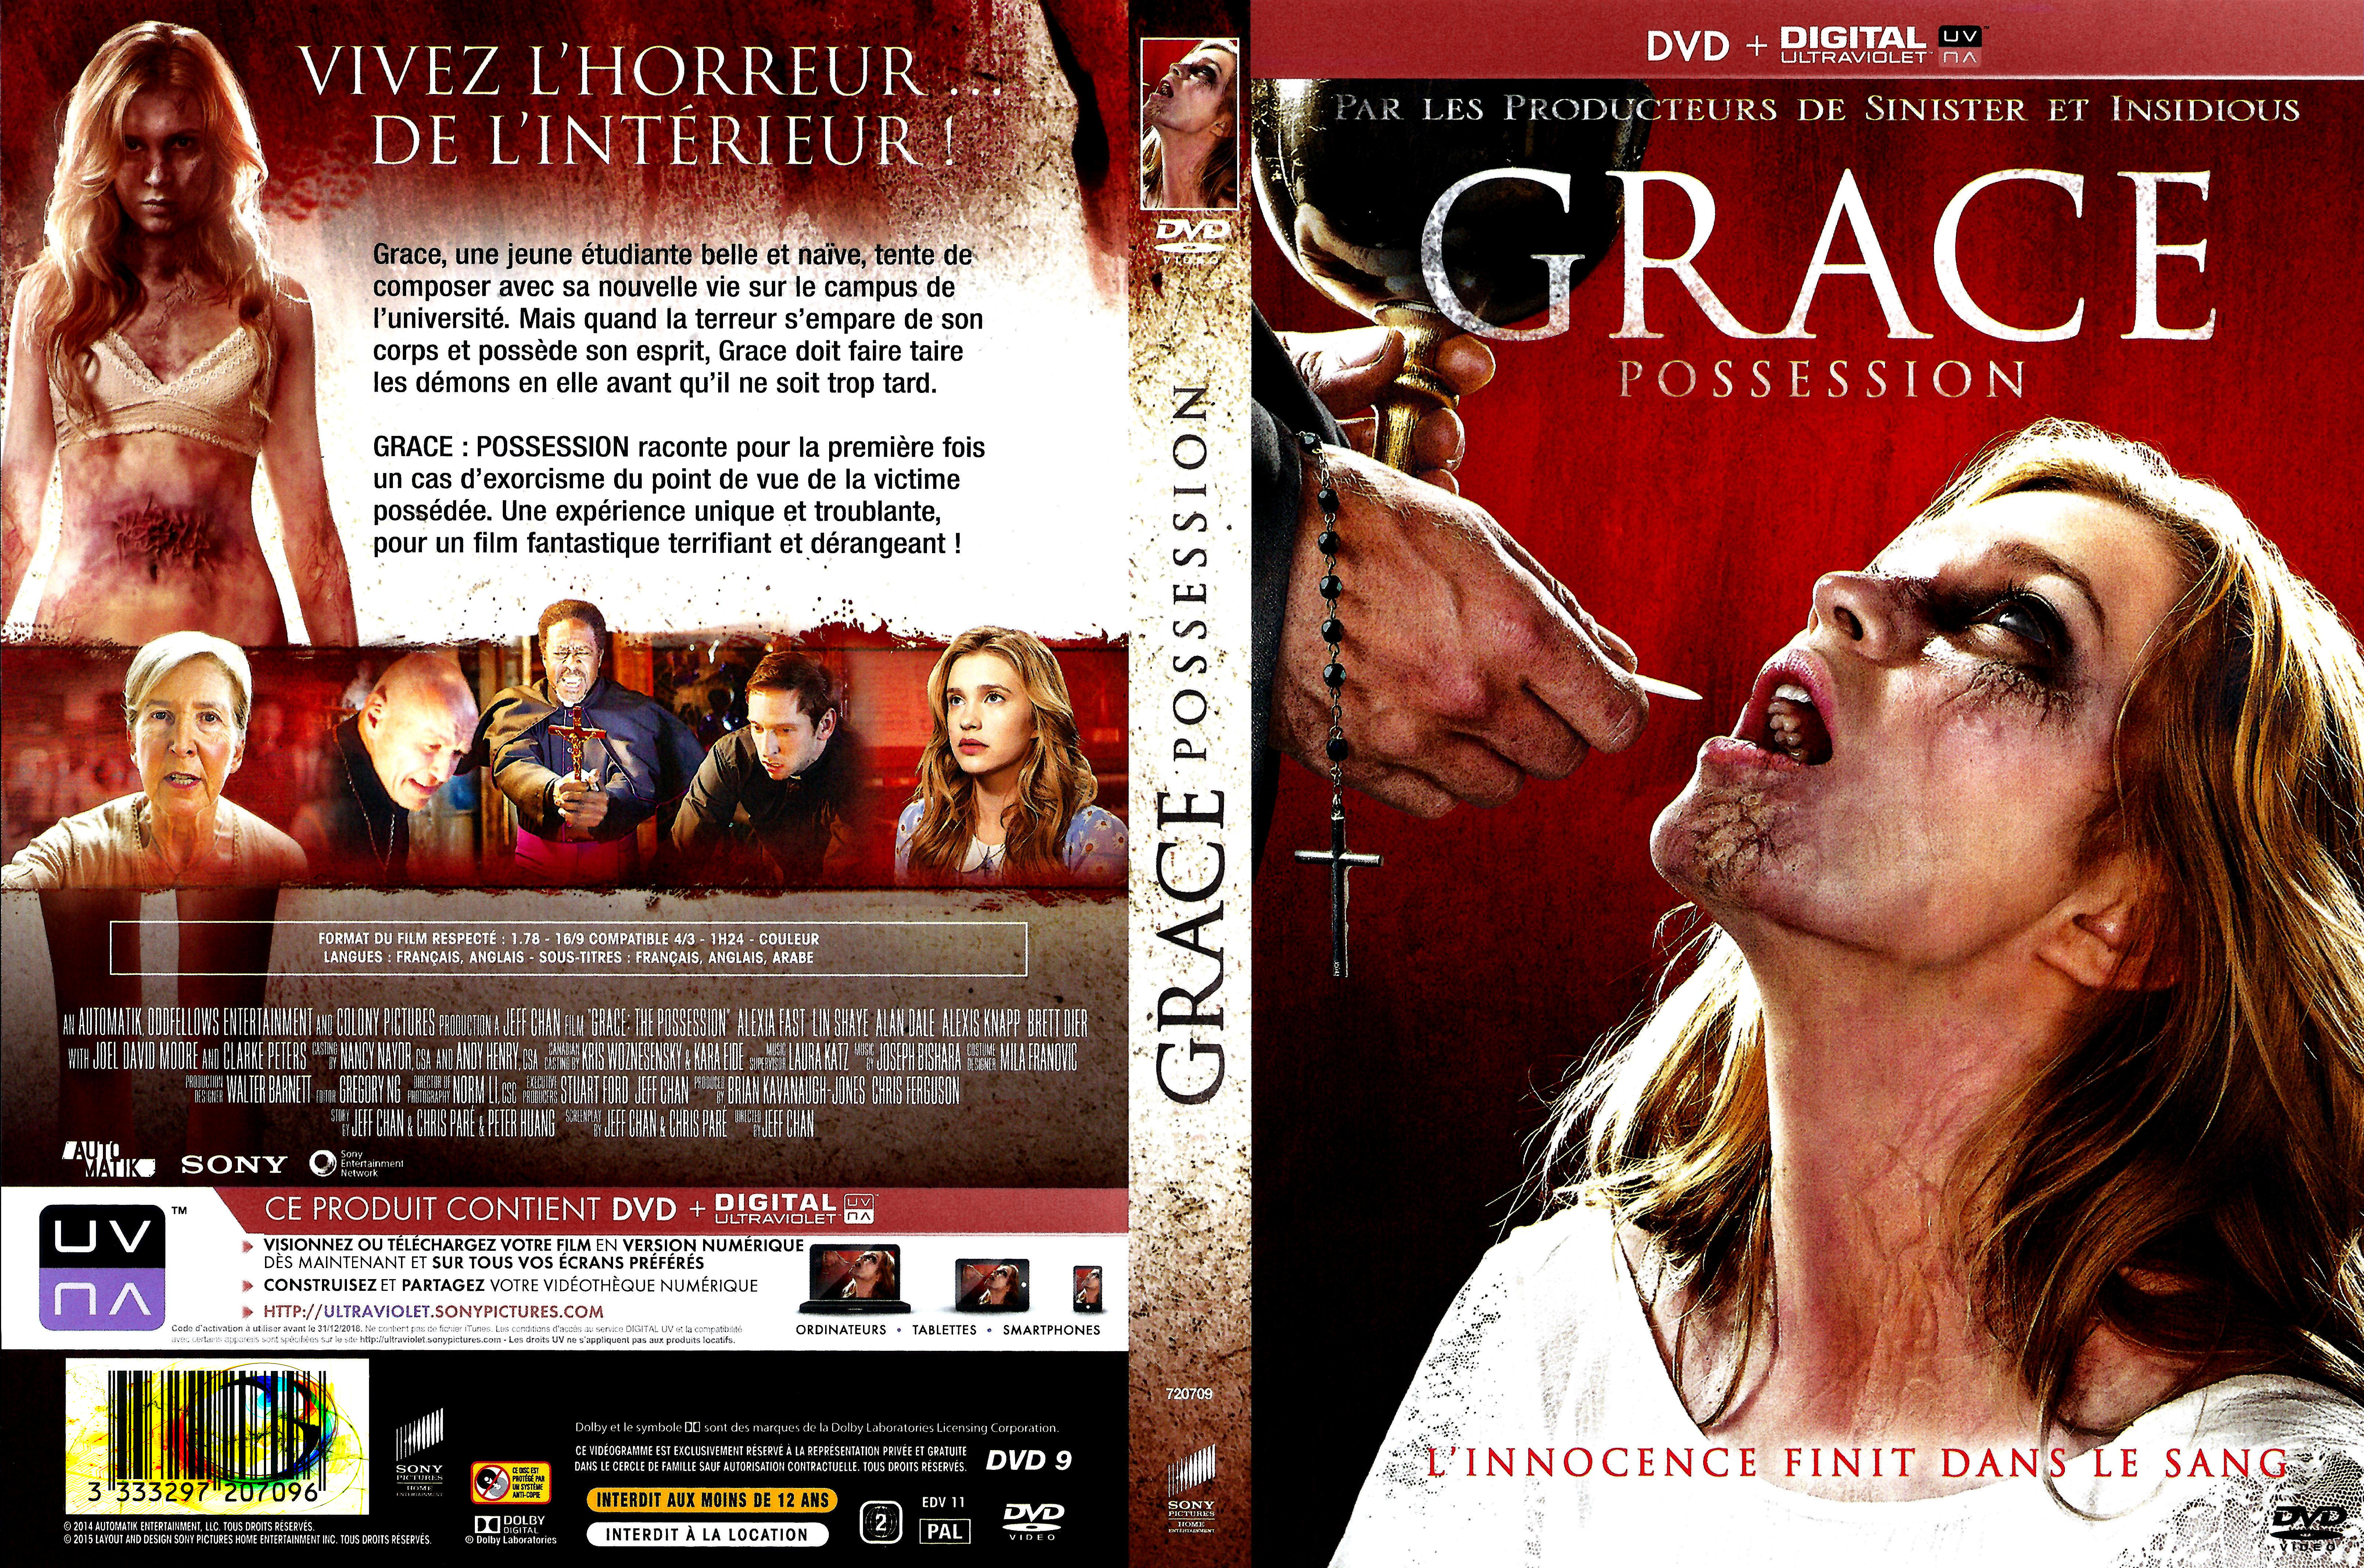 Jaquette DVD Grace possession